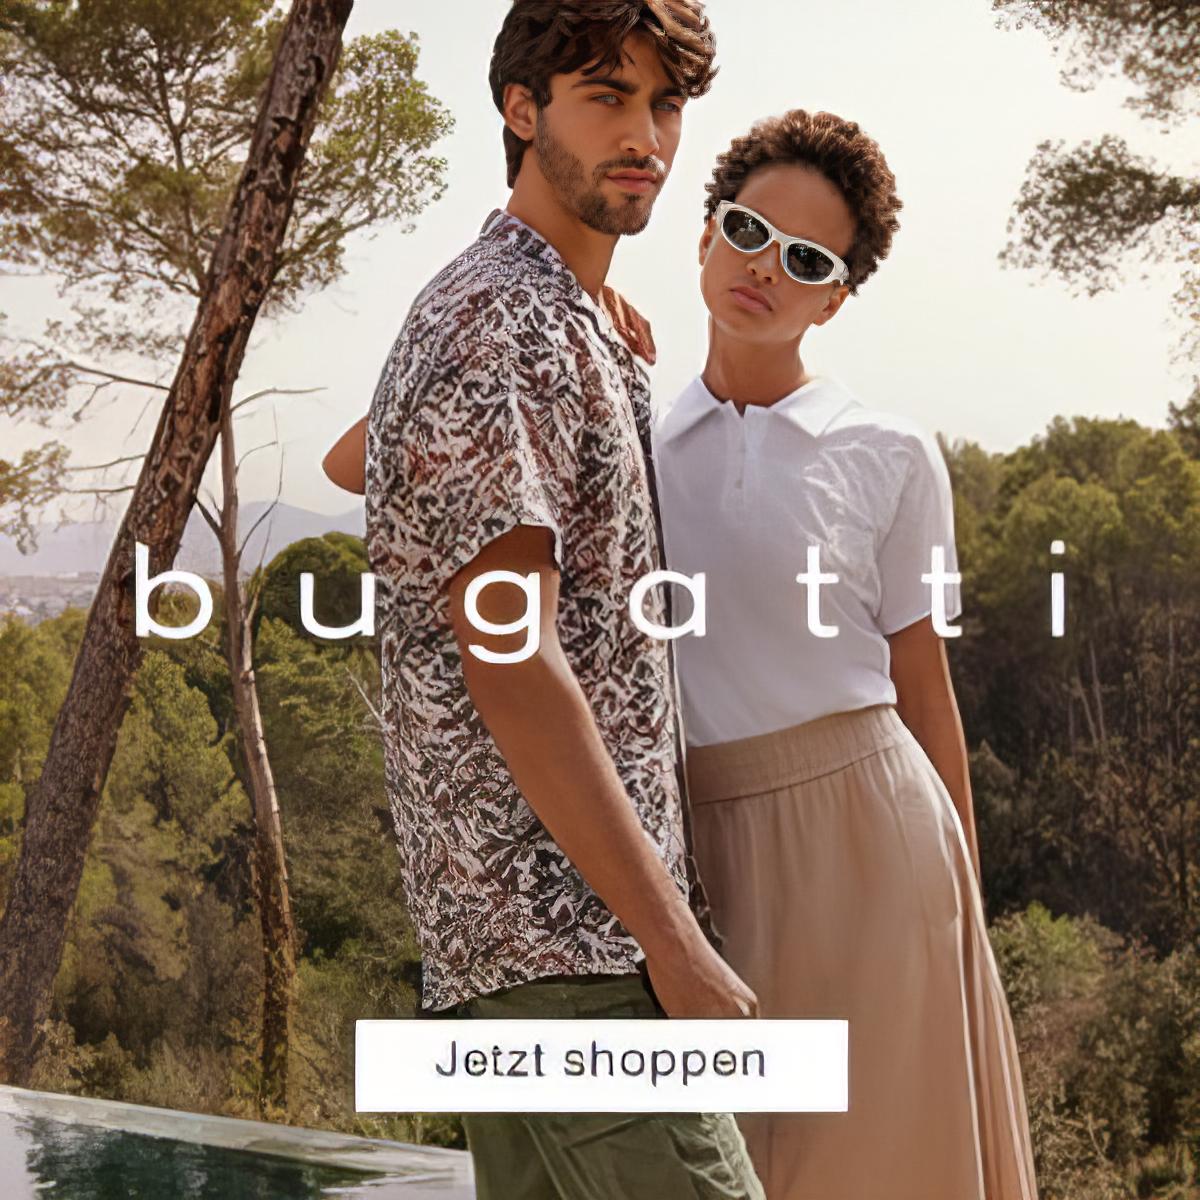 Bugatti – Zeitlose Eleganz und Qualität in Mode